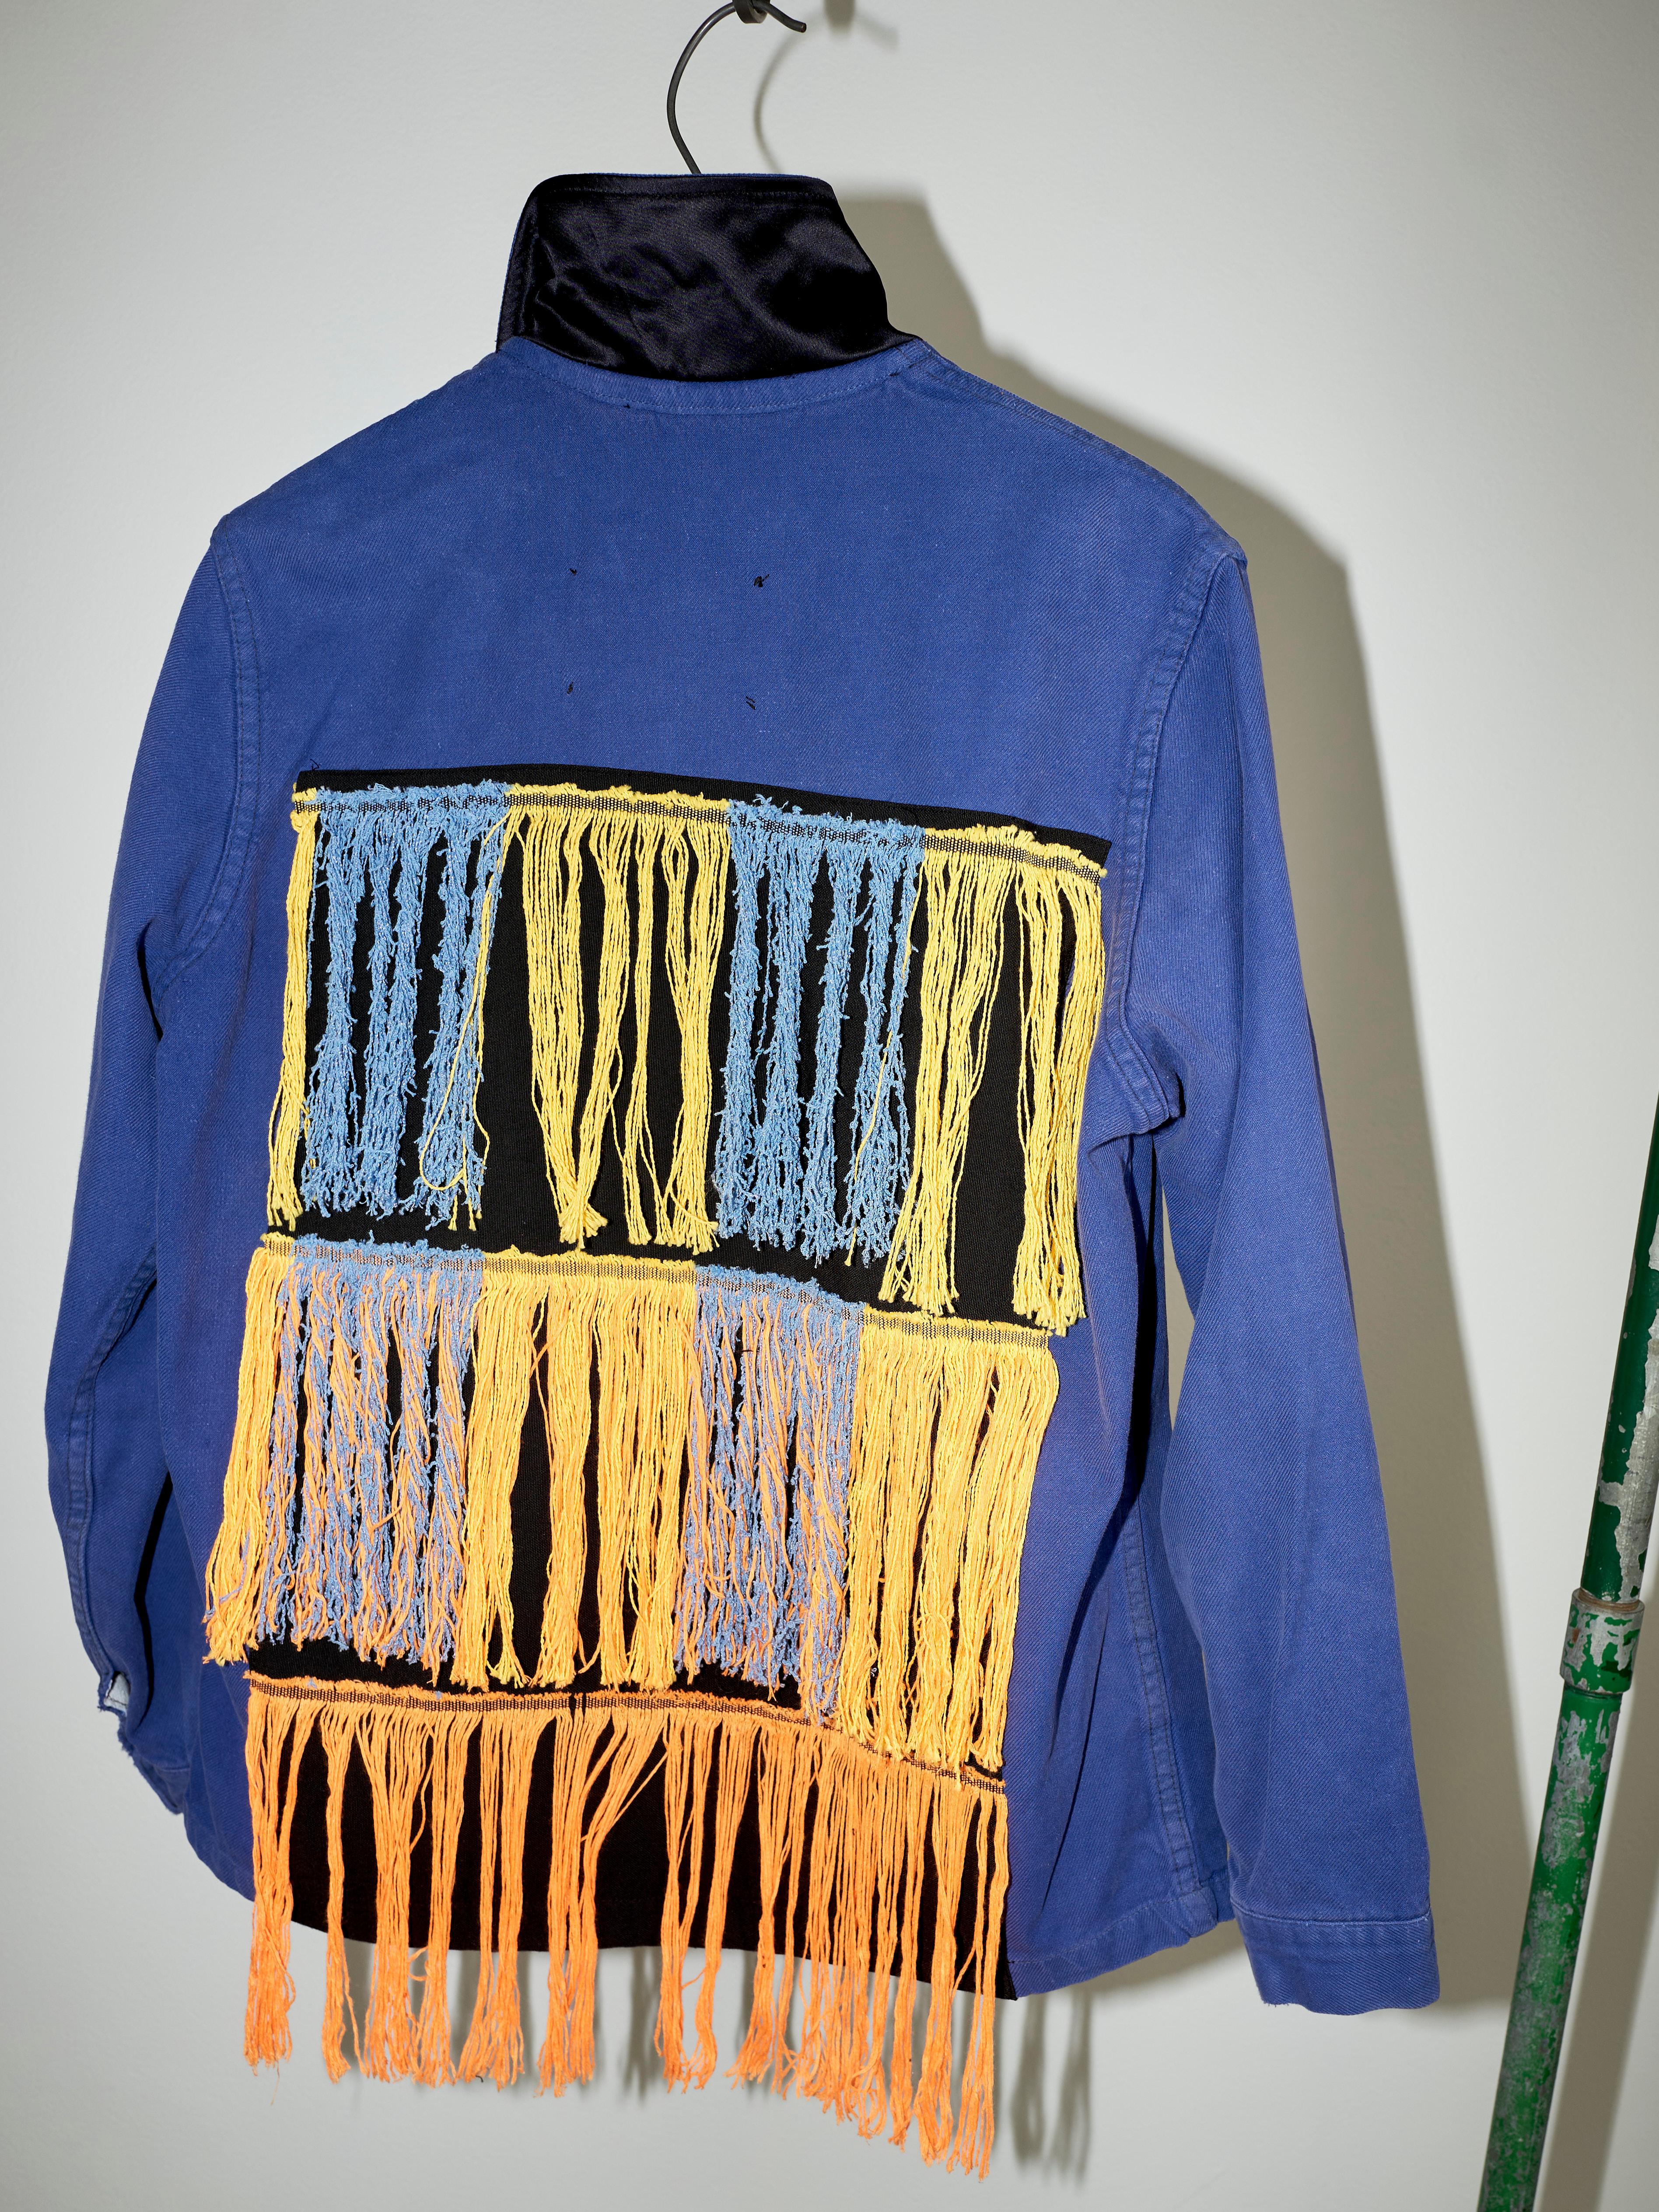 Embellished Fringe Jacket Blue Cotton French Work Wear  Small 4